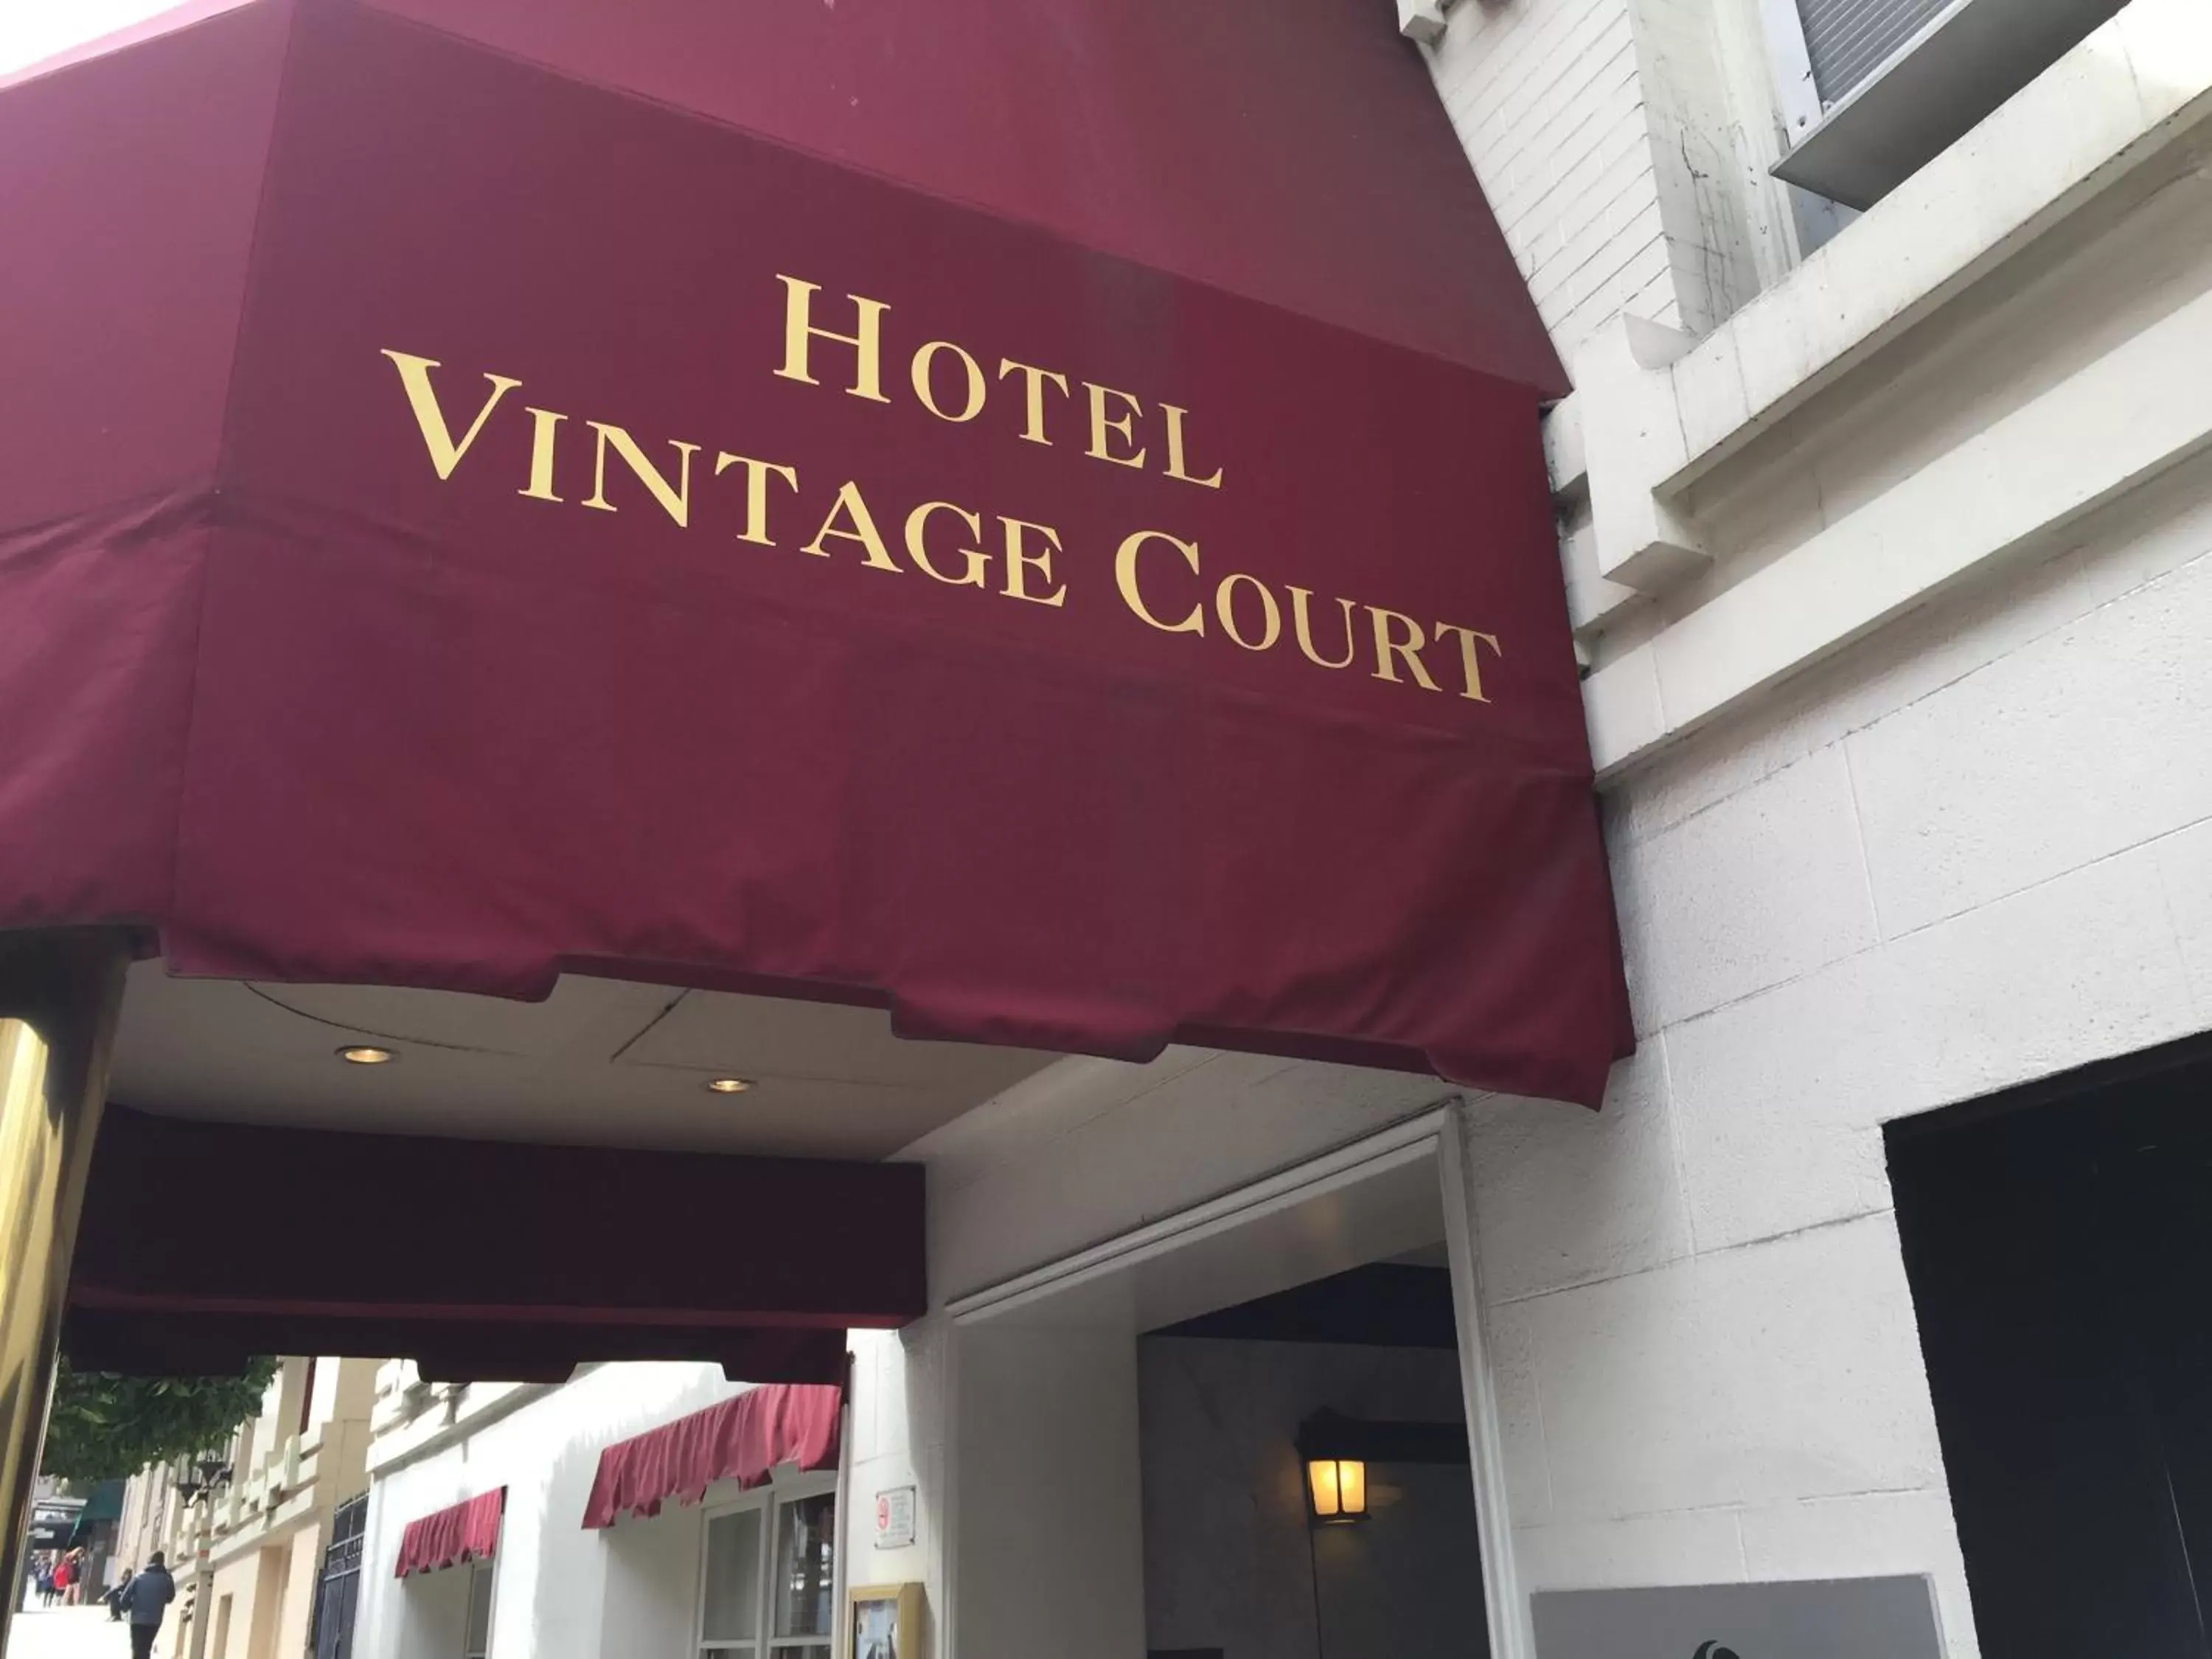 Facade/entrance in Executive Hotel Vintage Court